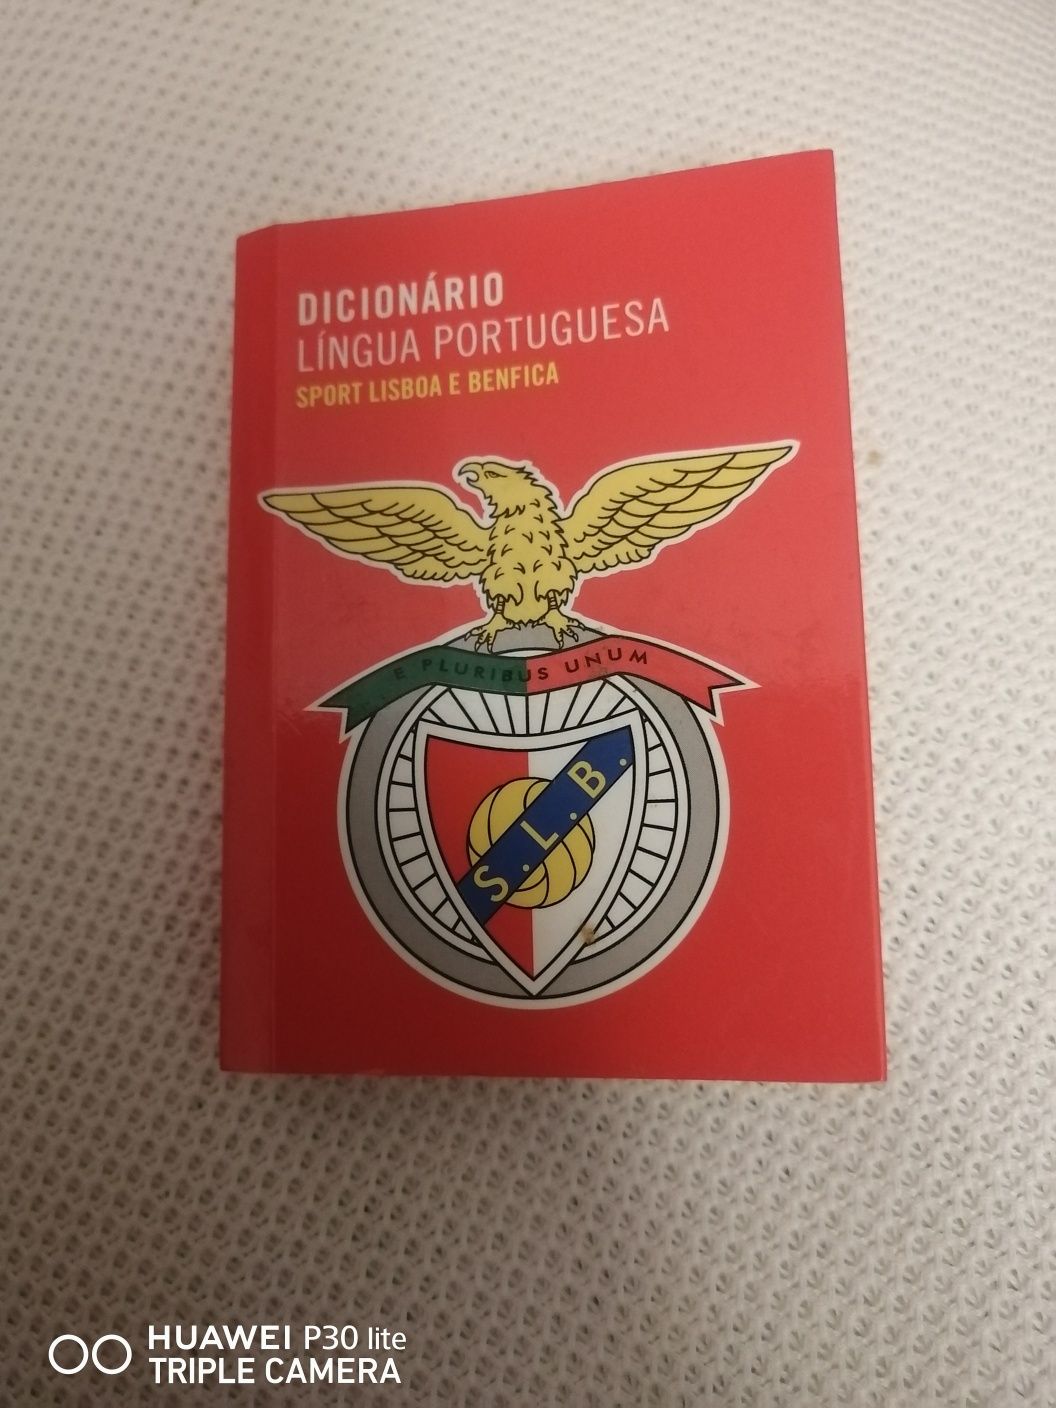 Dicionário da lingua portuguesa "sport Lisboa e Benfica"